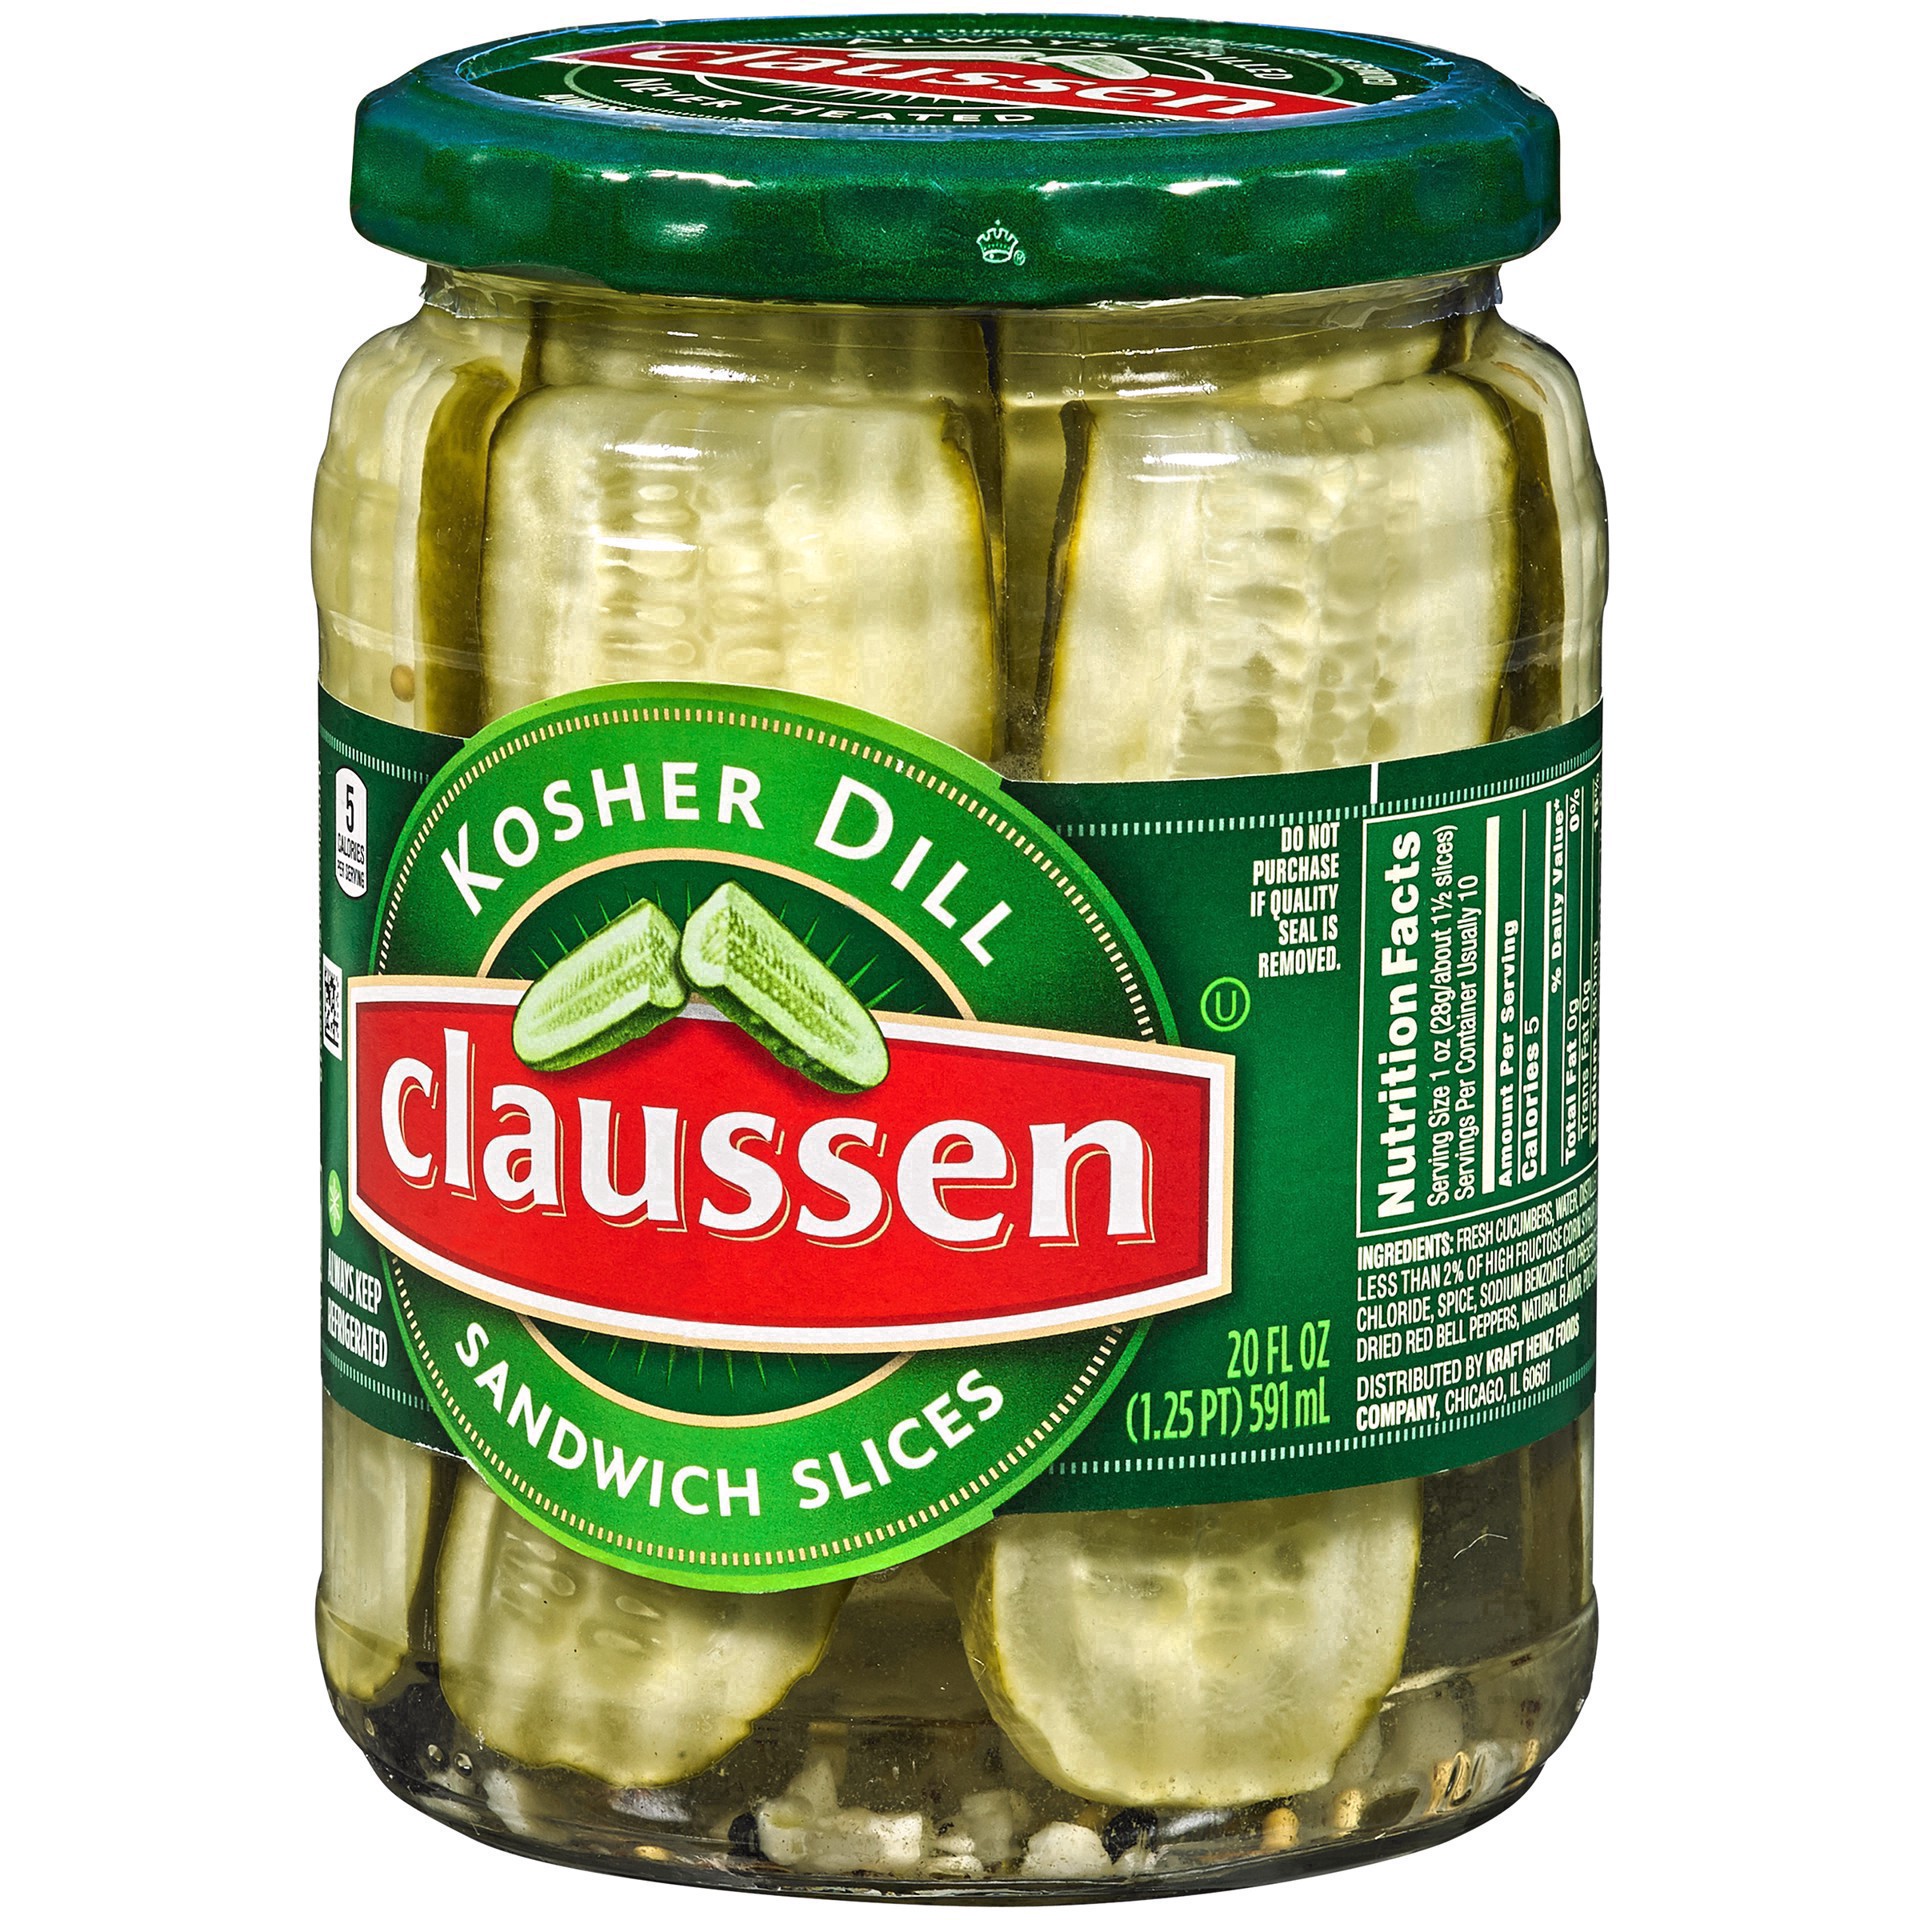 slide 84 of 144, Claussen Kosher Dill Pickle Sandwich Slices, 20 fl. oz. Jar, 20 fl oz